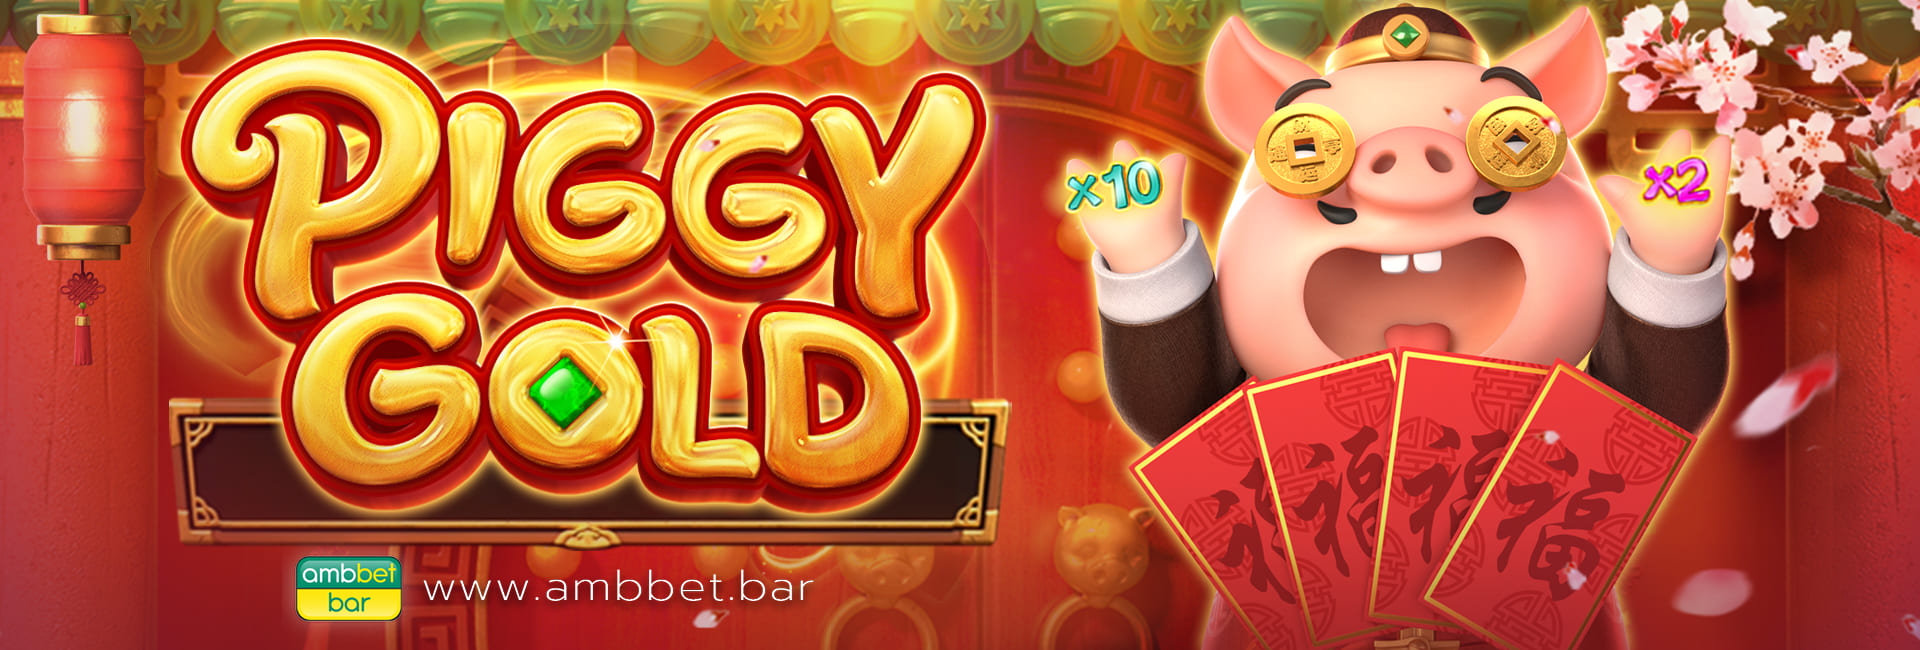 Piggy Gold banner